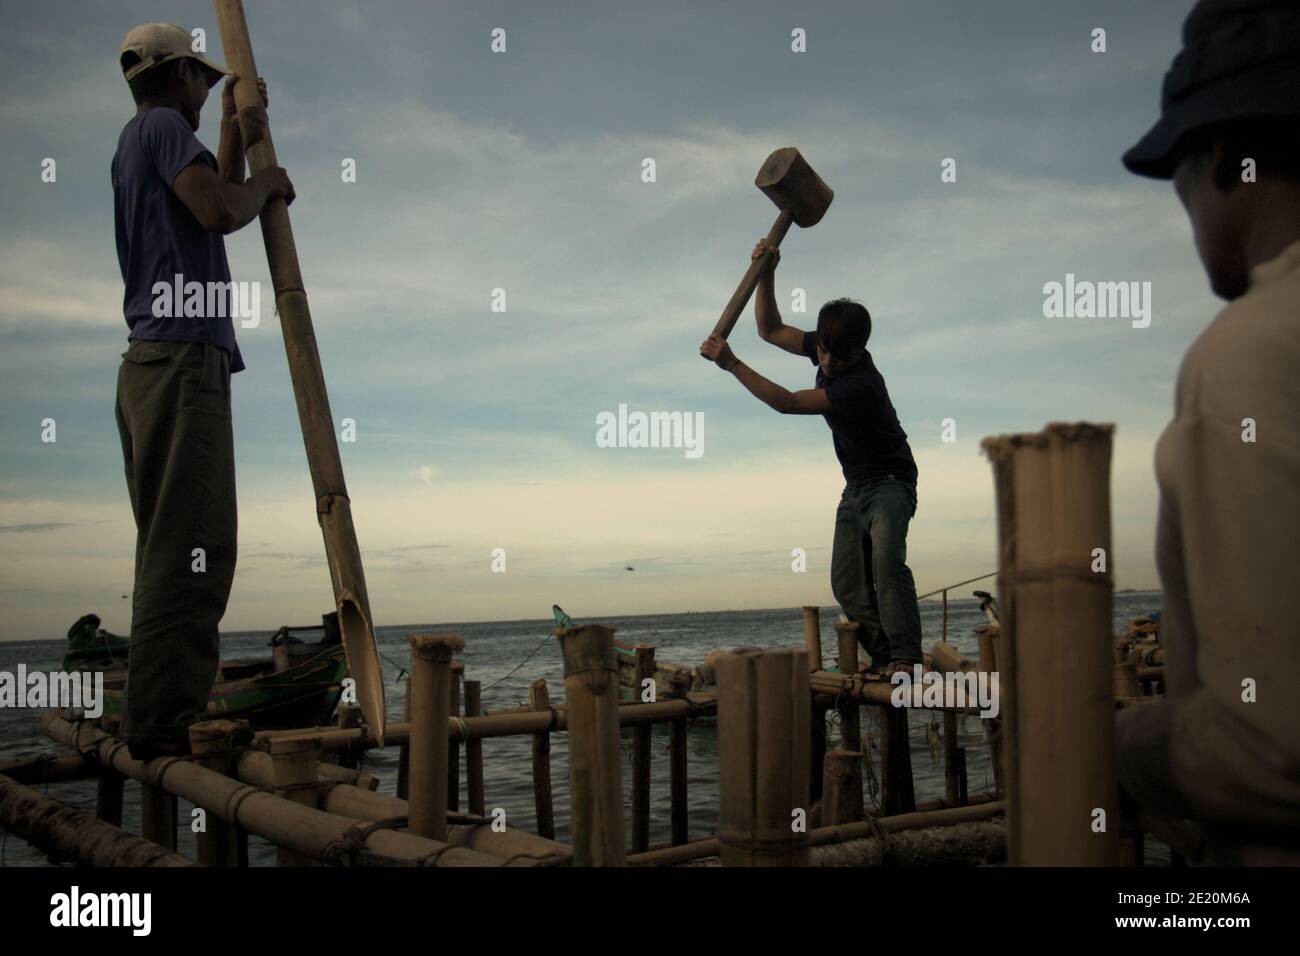 Des hommes construisent une structure côtière à l'aide de poteaux en bambou dans le village de Cilincing, sur la zone côtière de Jakarta, en Indonésie. Photo d'archives (2008). Banque D'Images